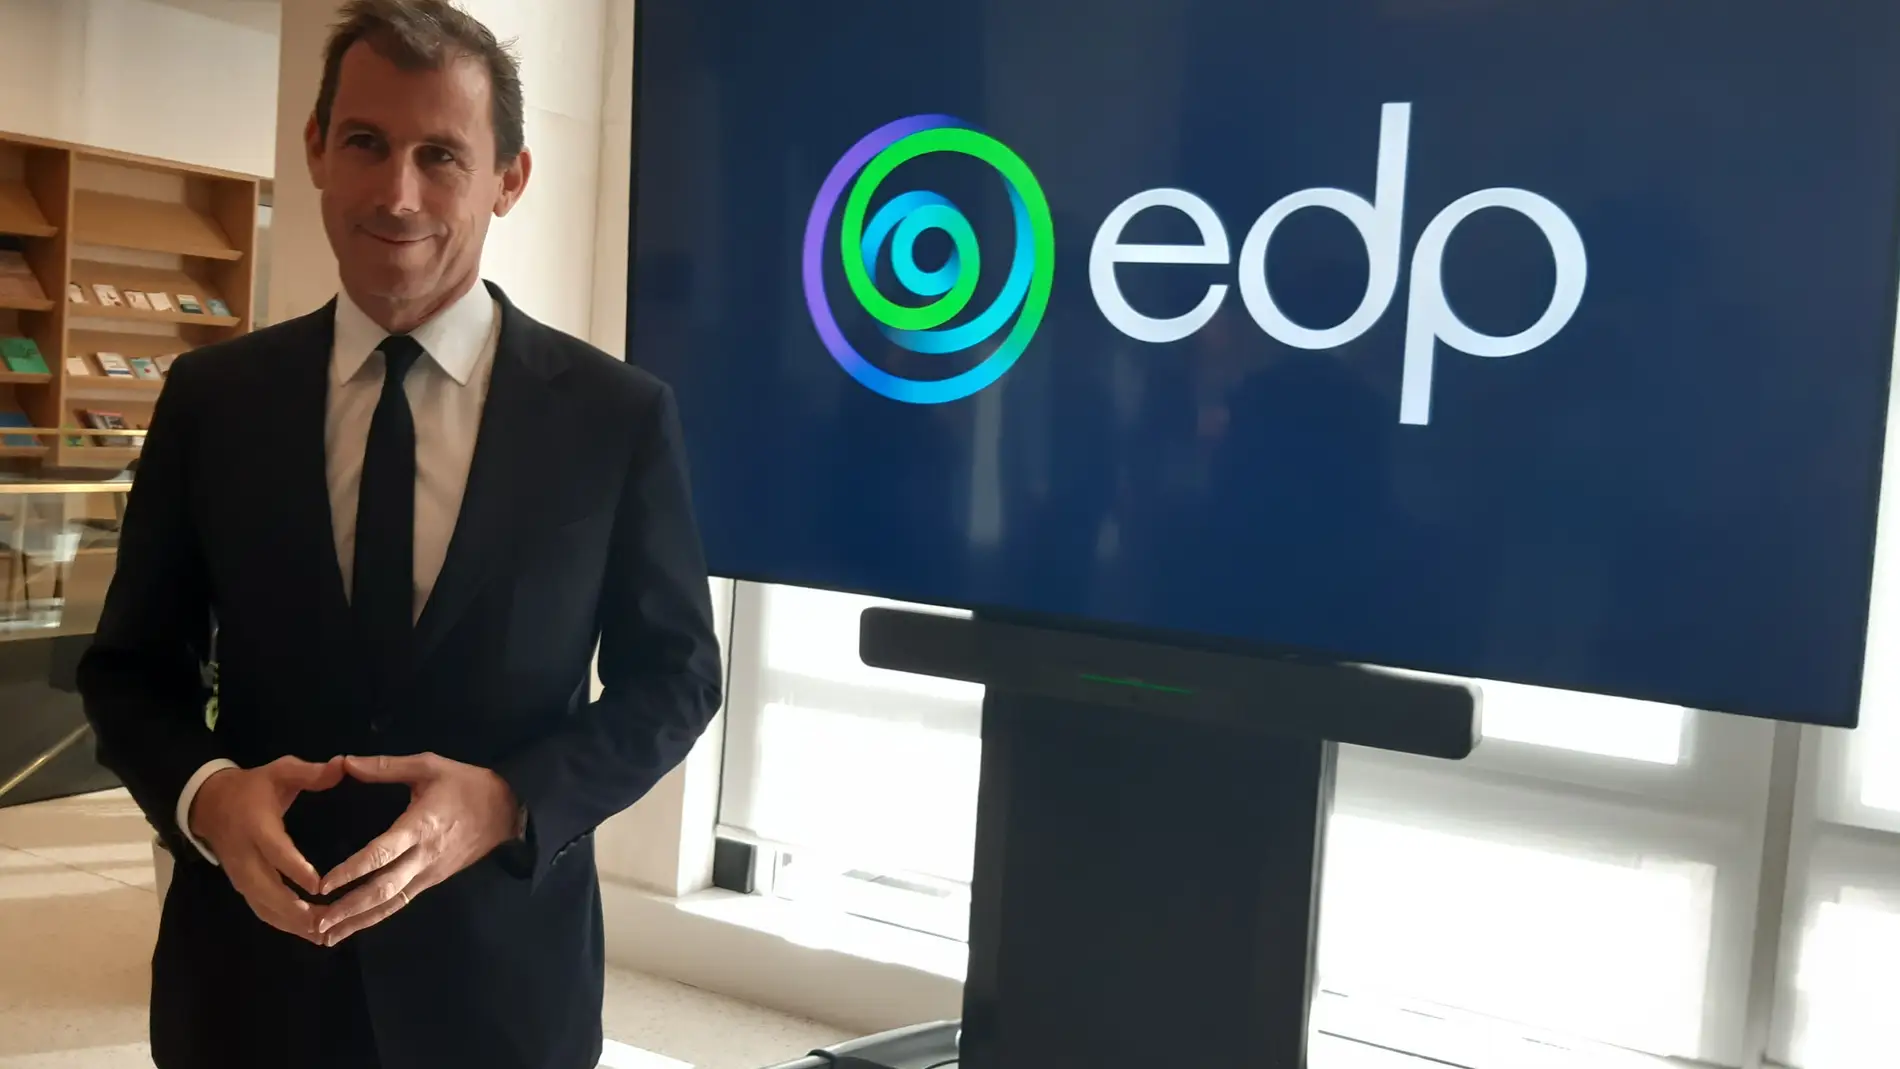 El CEO de EDP Renováveis Miguel Stilwell refuerza el compromiso de descarbonización en Asturias